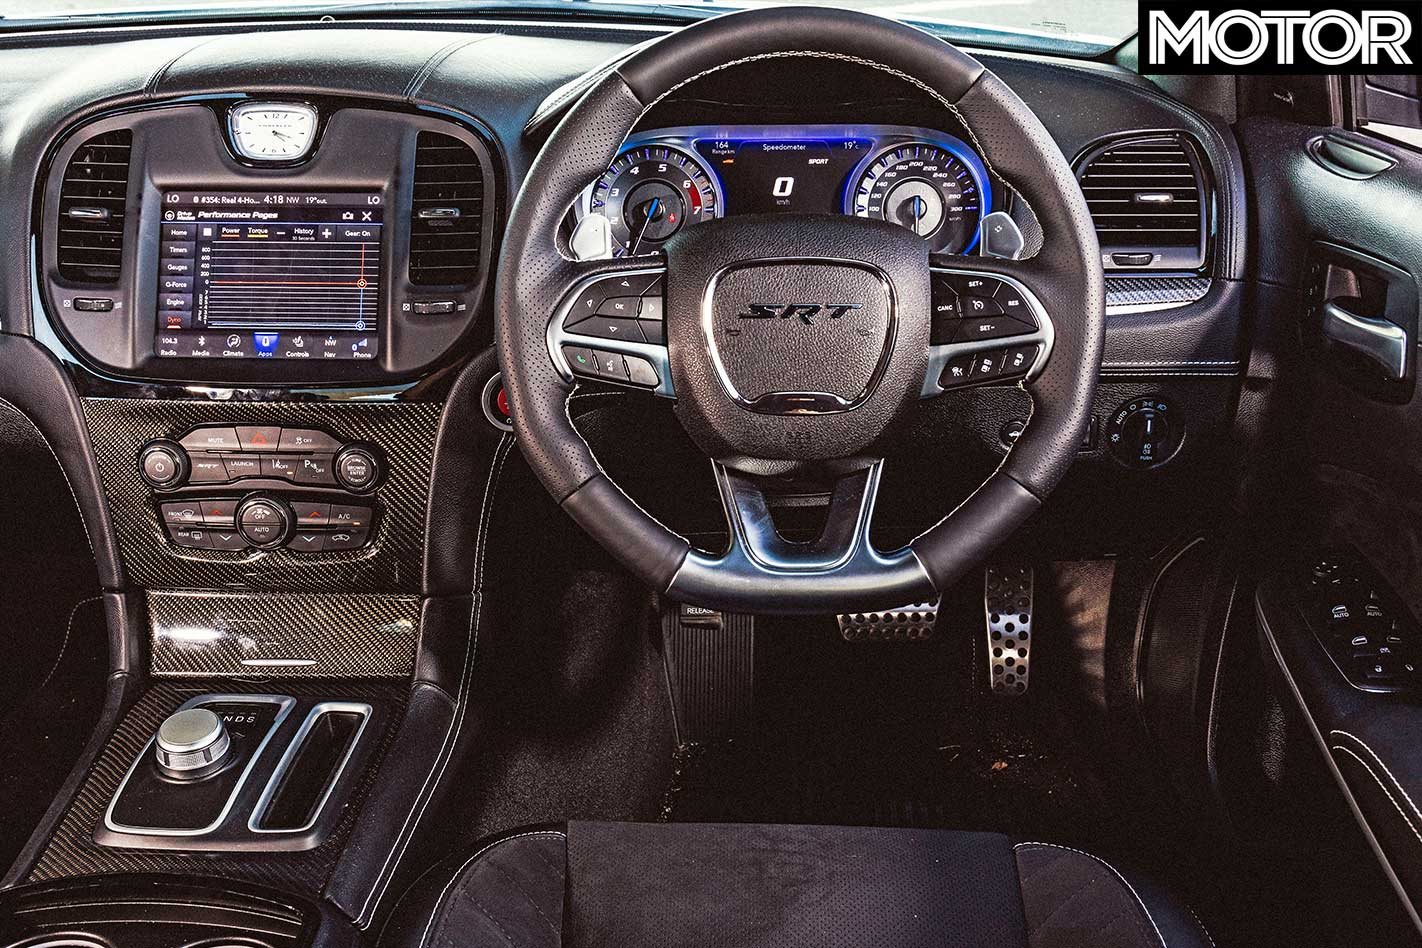 2019 Ford Mustang Bullitt Vs Chrysler 300 Srt Comparison Motor